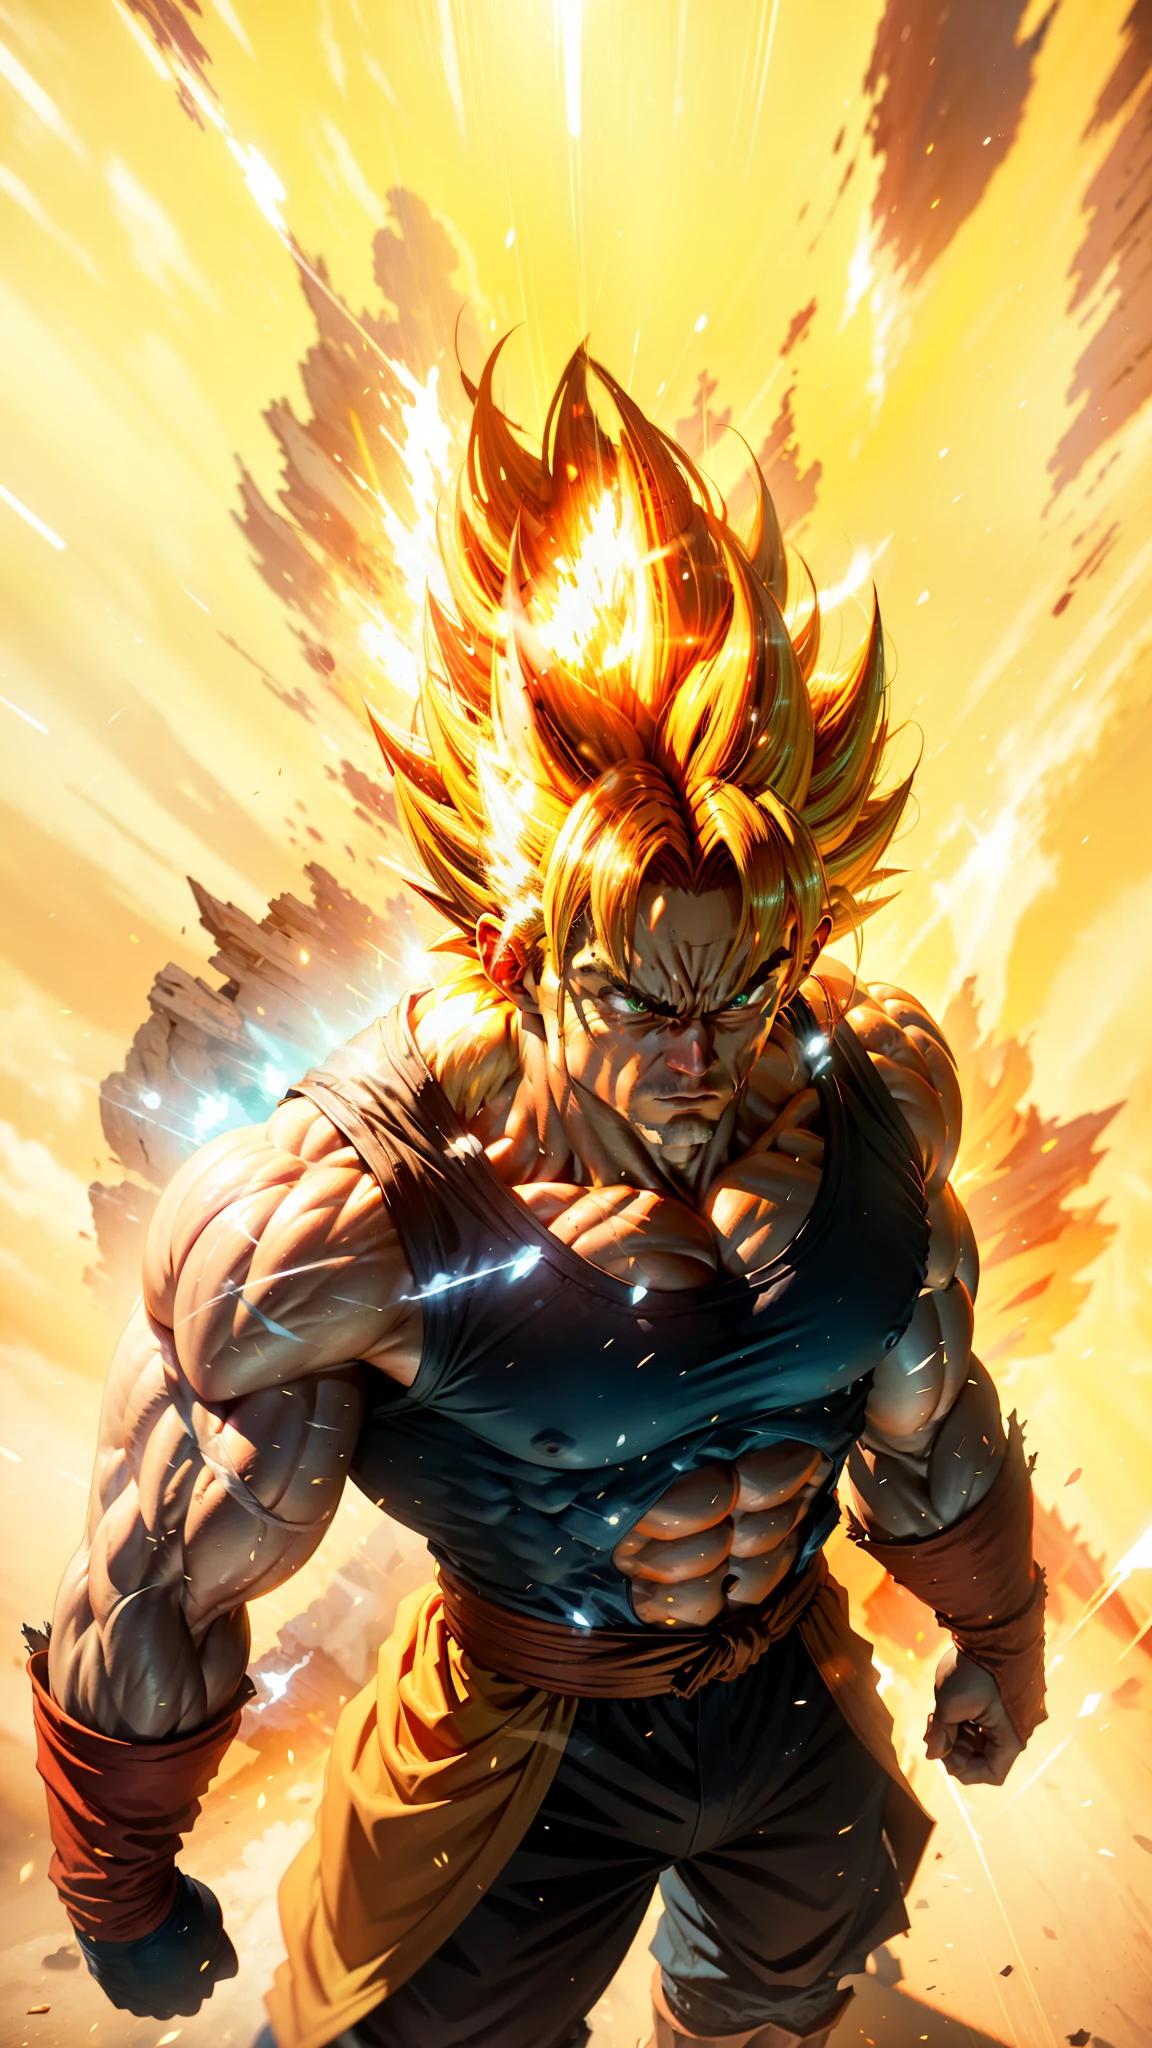 Goku Super Saiyan, Homme adulte avec des cheveux dorés fluo extrêmement musclés, muscles définis pleins de veines, gilet de couleur bleu foncé, gants rouges, visage sérieux, définition musculaire, grandes épaules, biceps arrondis, moteur irréel 5.8k.